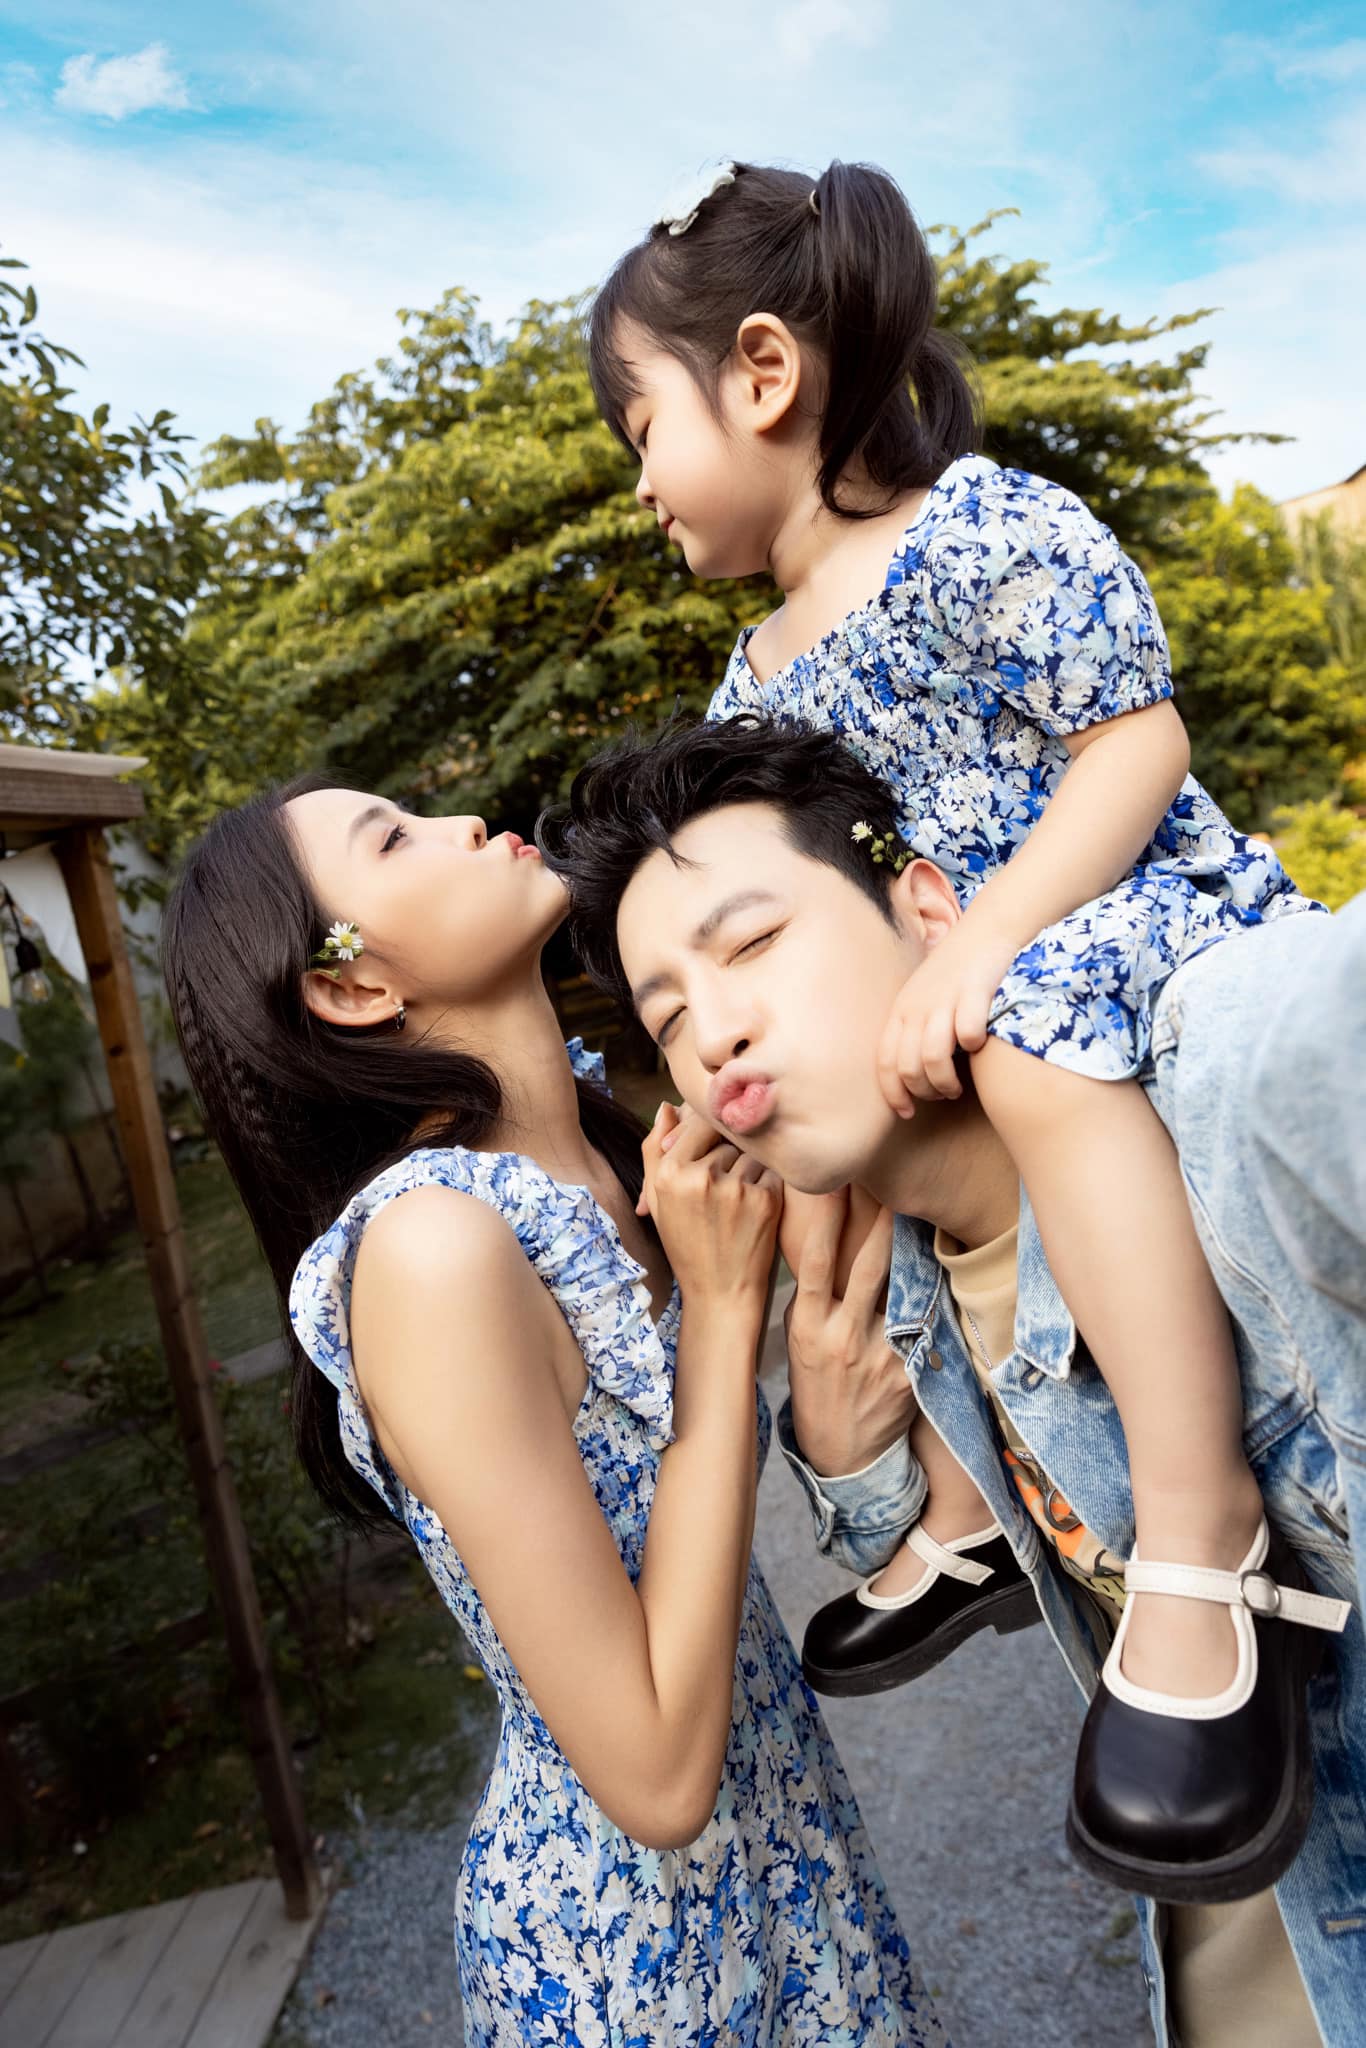 Phí Ngọc Hưng cầu hôn Trương Mỹ Nhân sau 5 năm bên nhau và có 1 cô con gái - ảnh 5